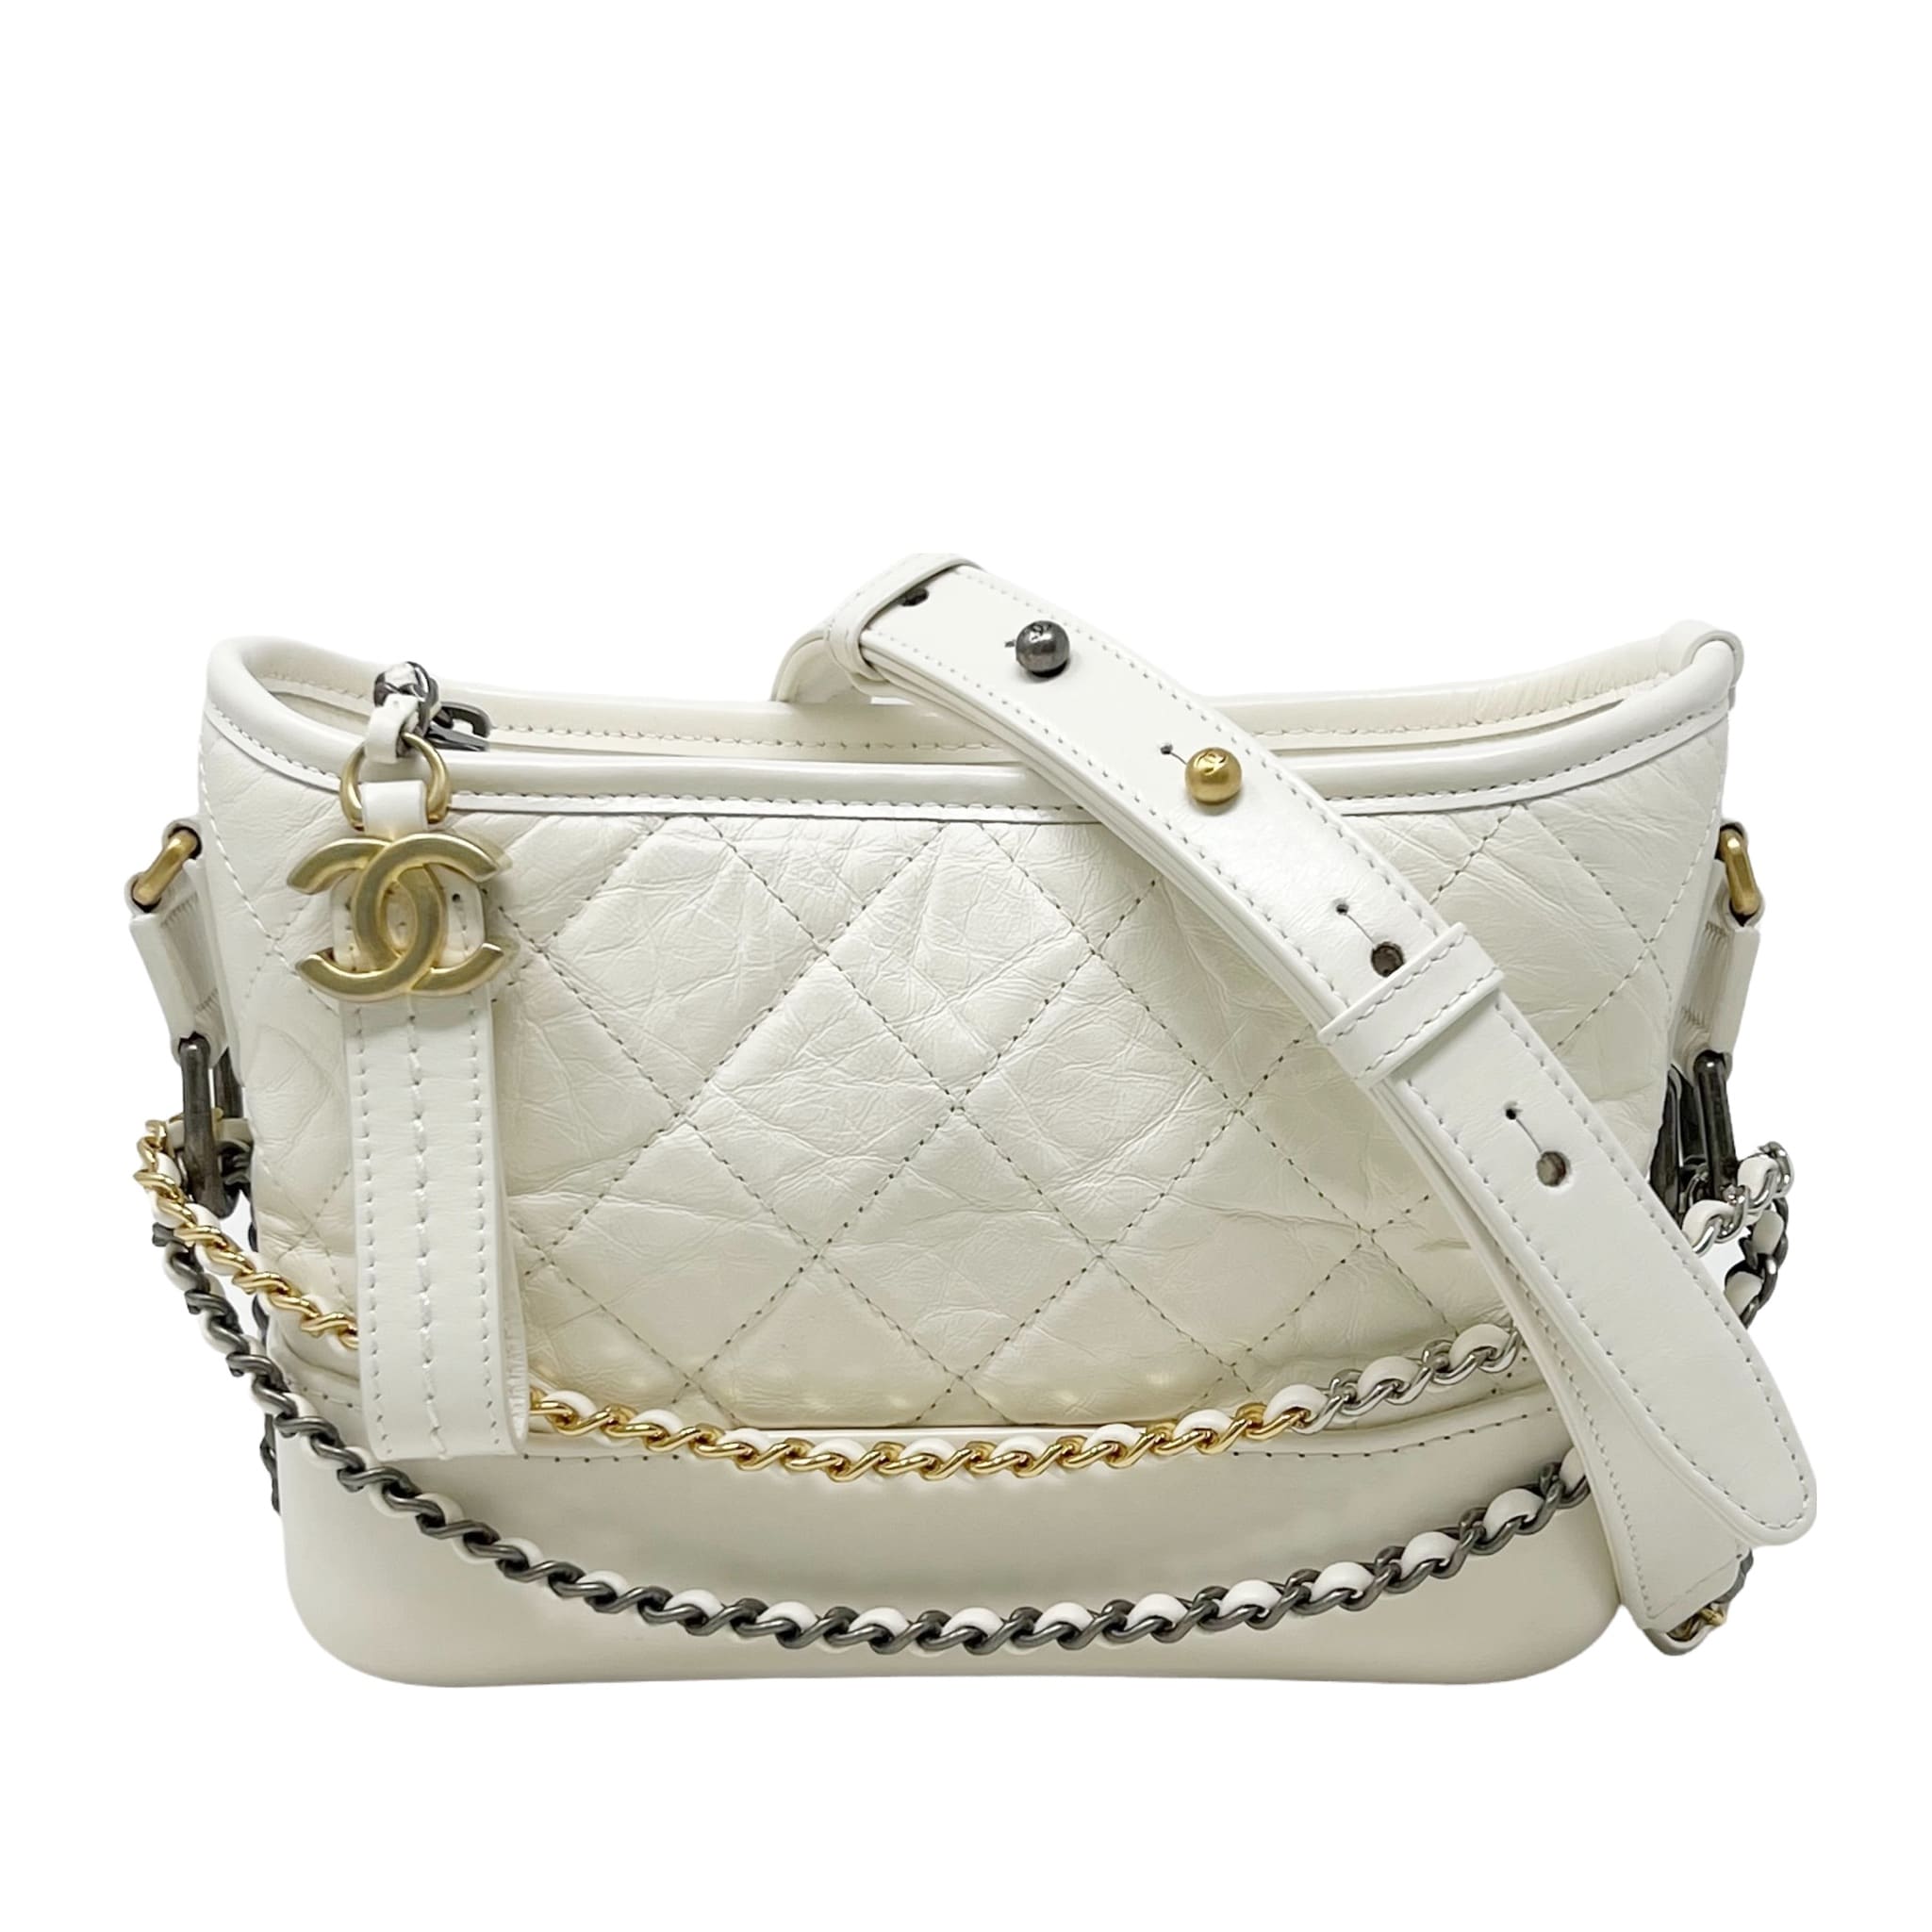 Chanel White Aged Calfskin Small Gabrielle Bag